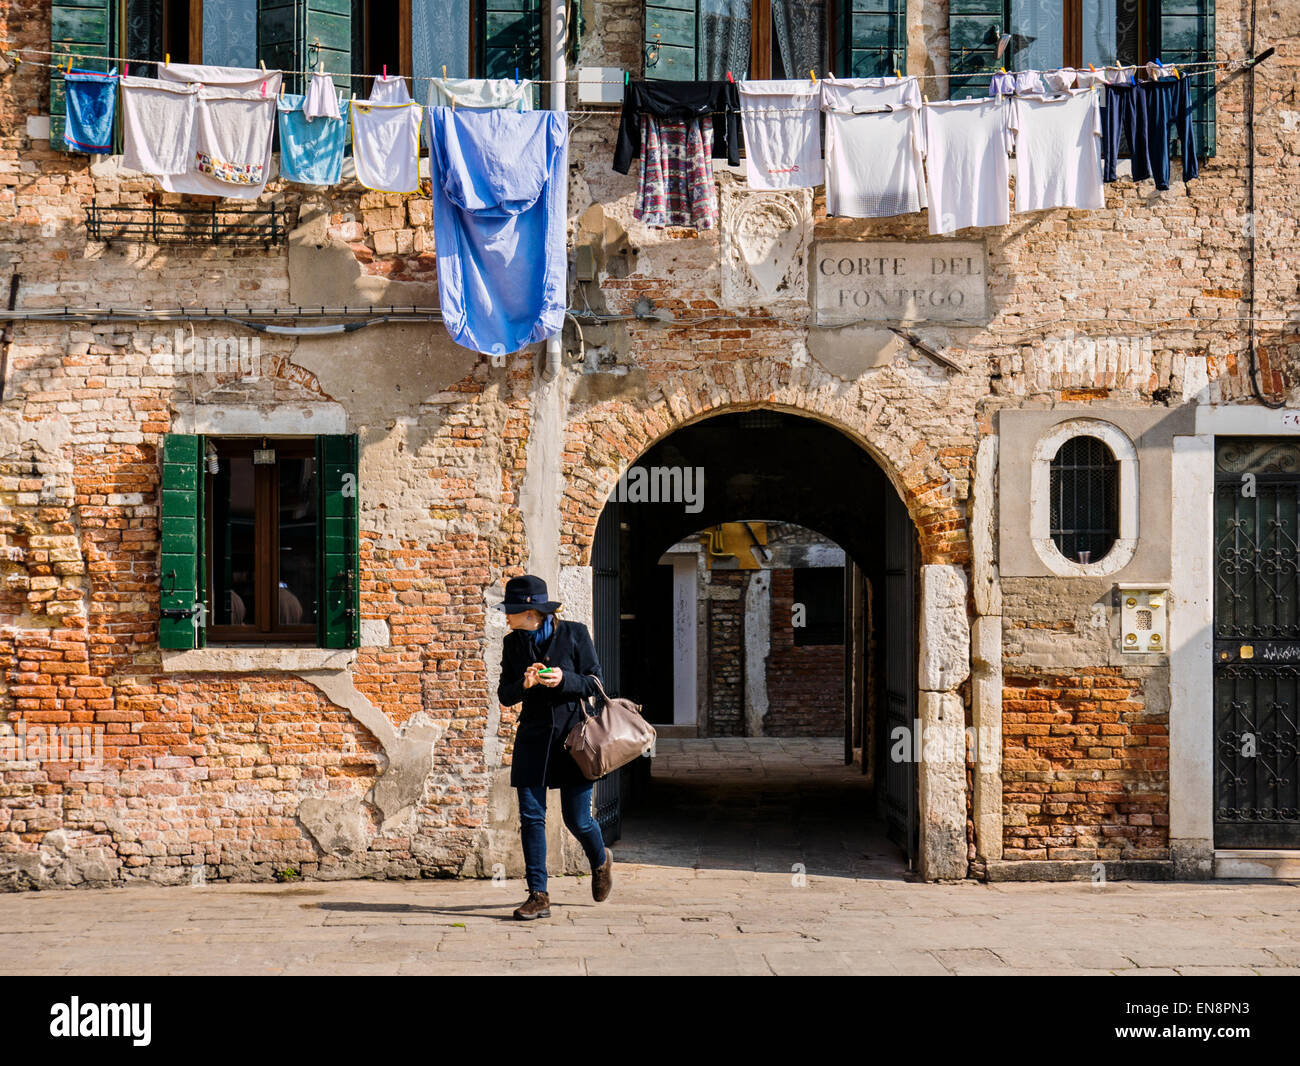 Donna cammina al di sotto della biancheria appesa ad asciugare, Venezia, Italia, città dei canali Foto Stock